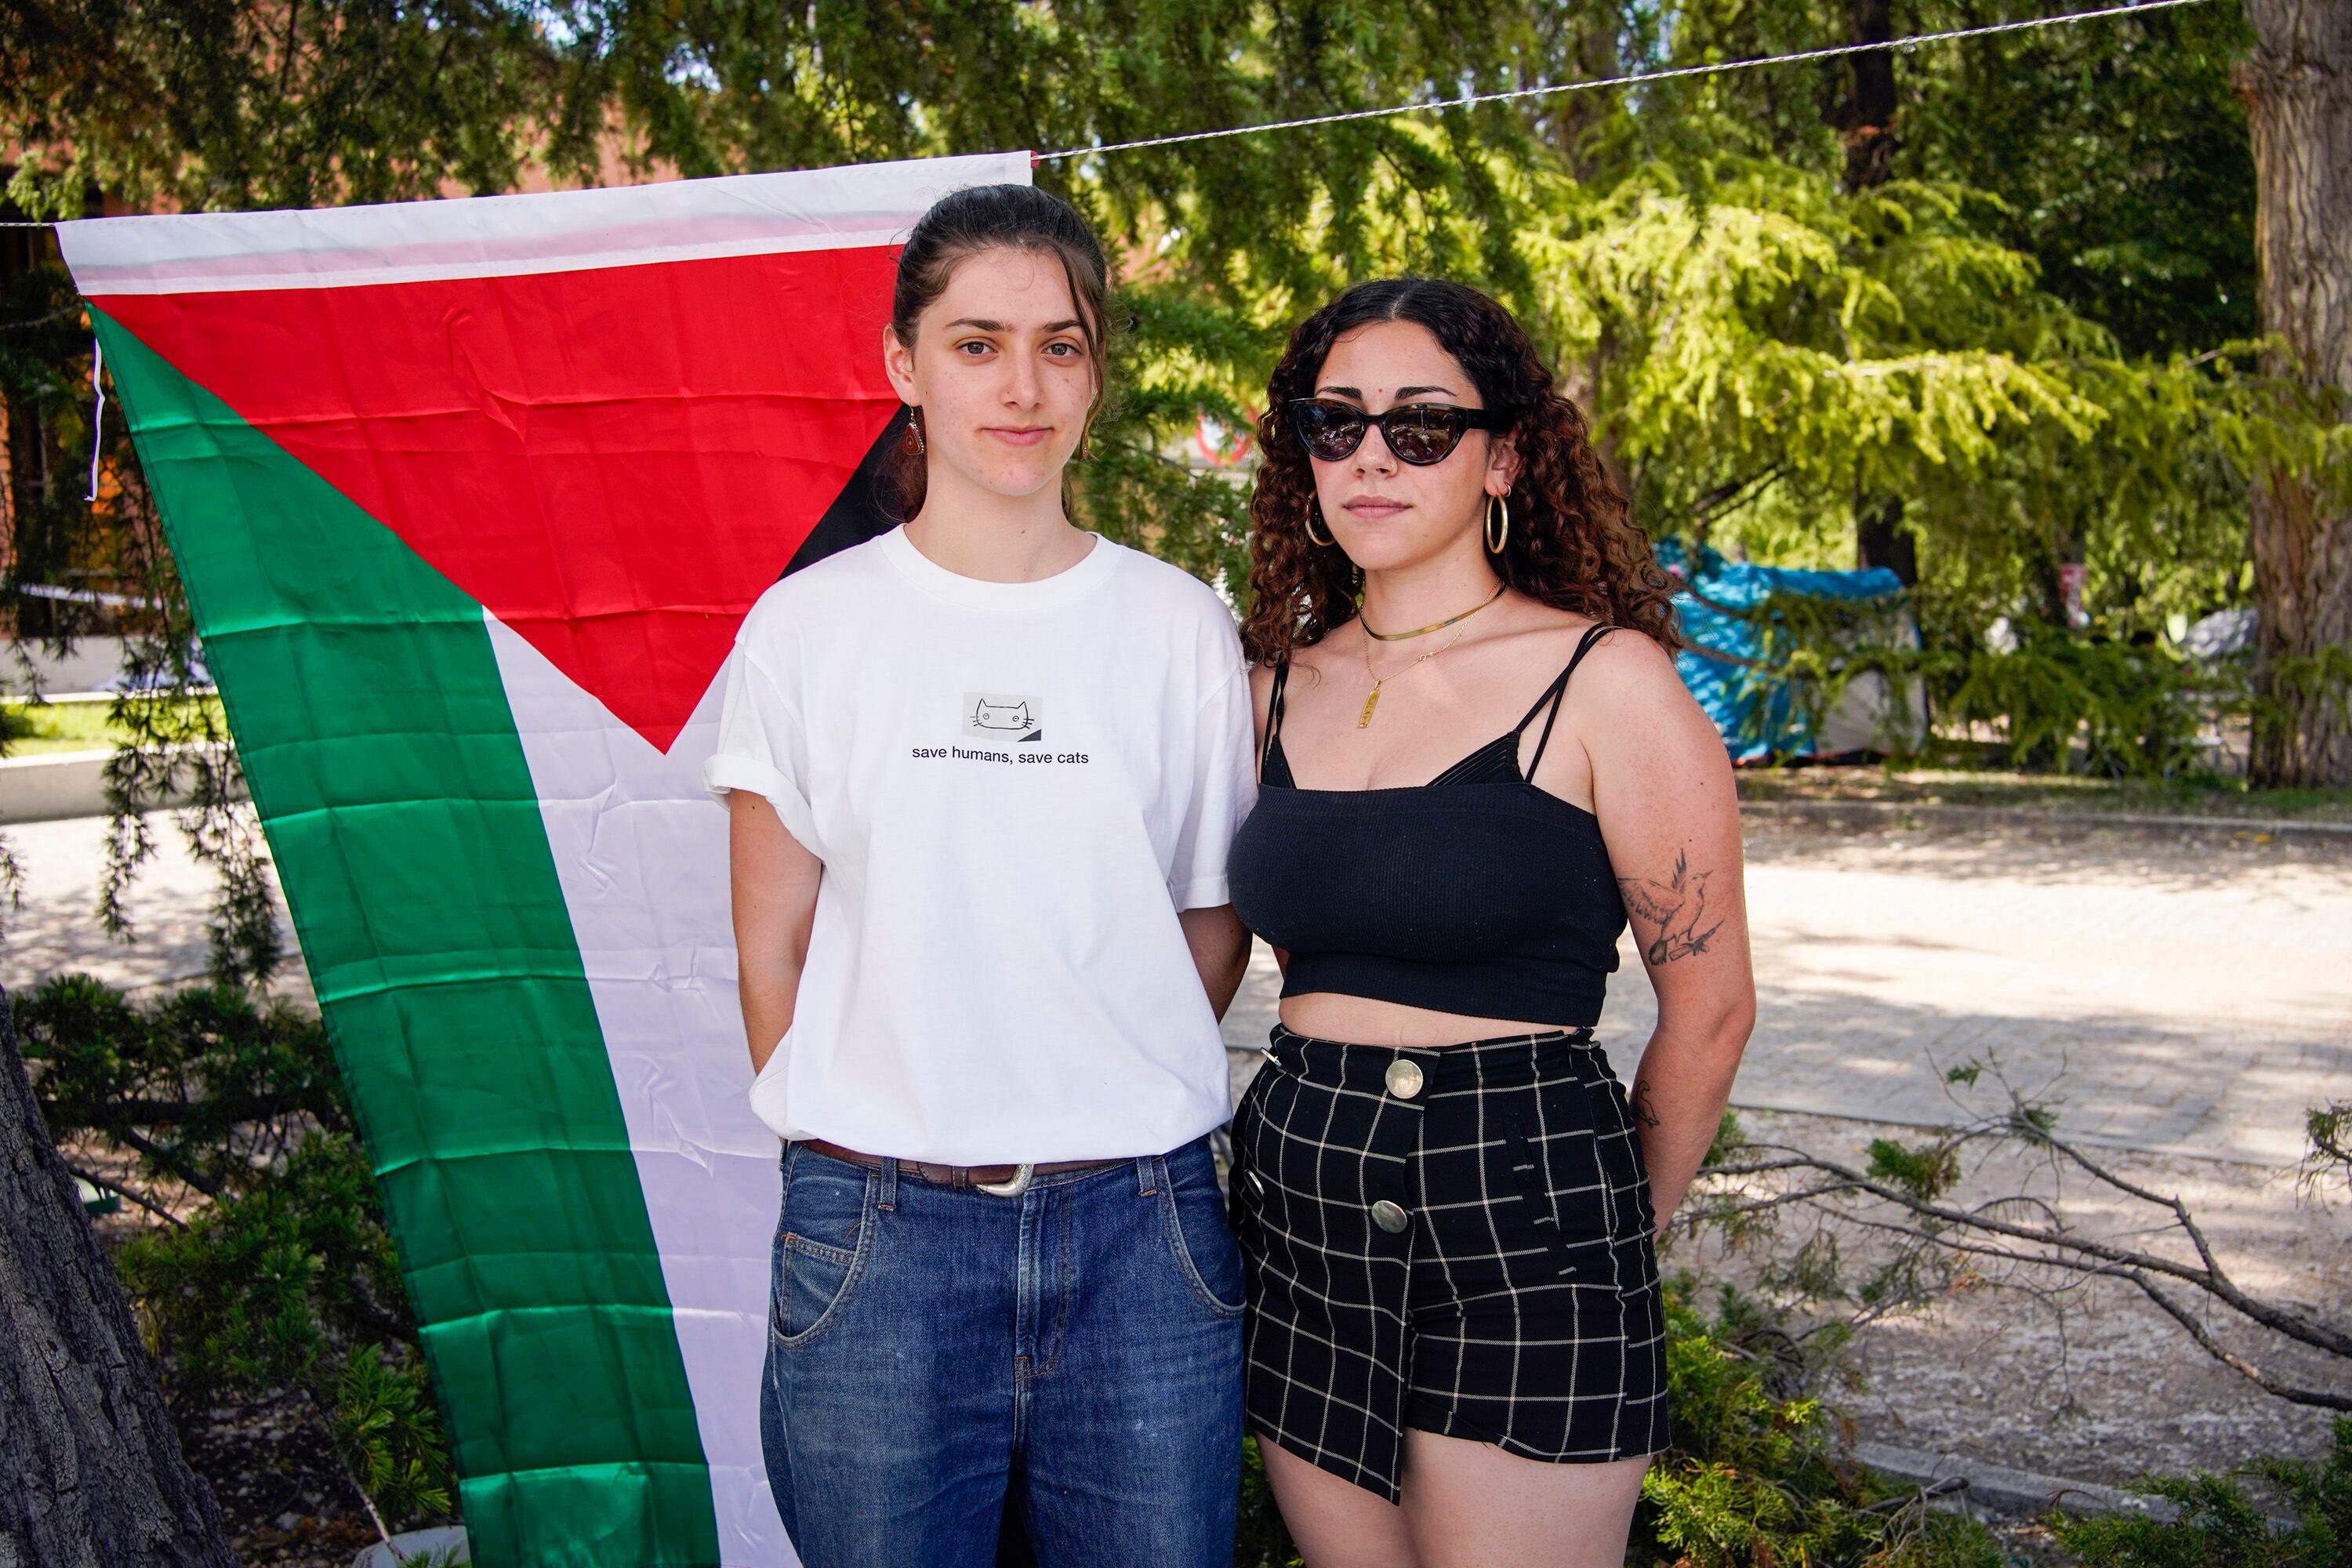 A la izquierda Enma, estudiante de Bellas Artes, y a la derecha Lucía, alumna del máster en Formación del Profesorado, el pasado sábado en la acampada de Ciudad Universitaria de Madrid.